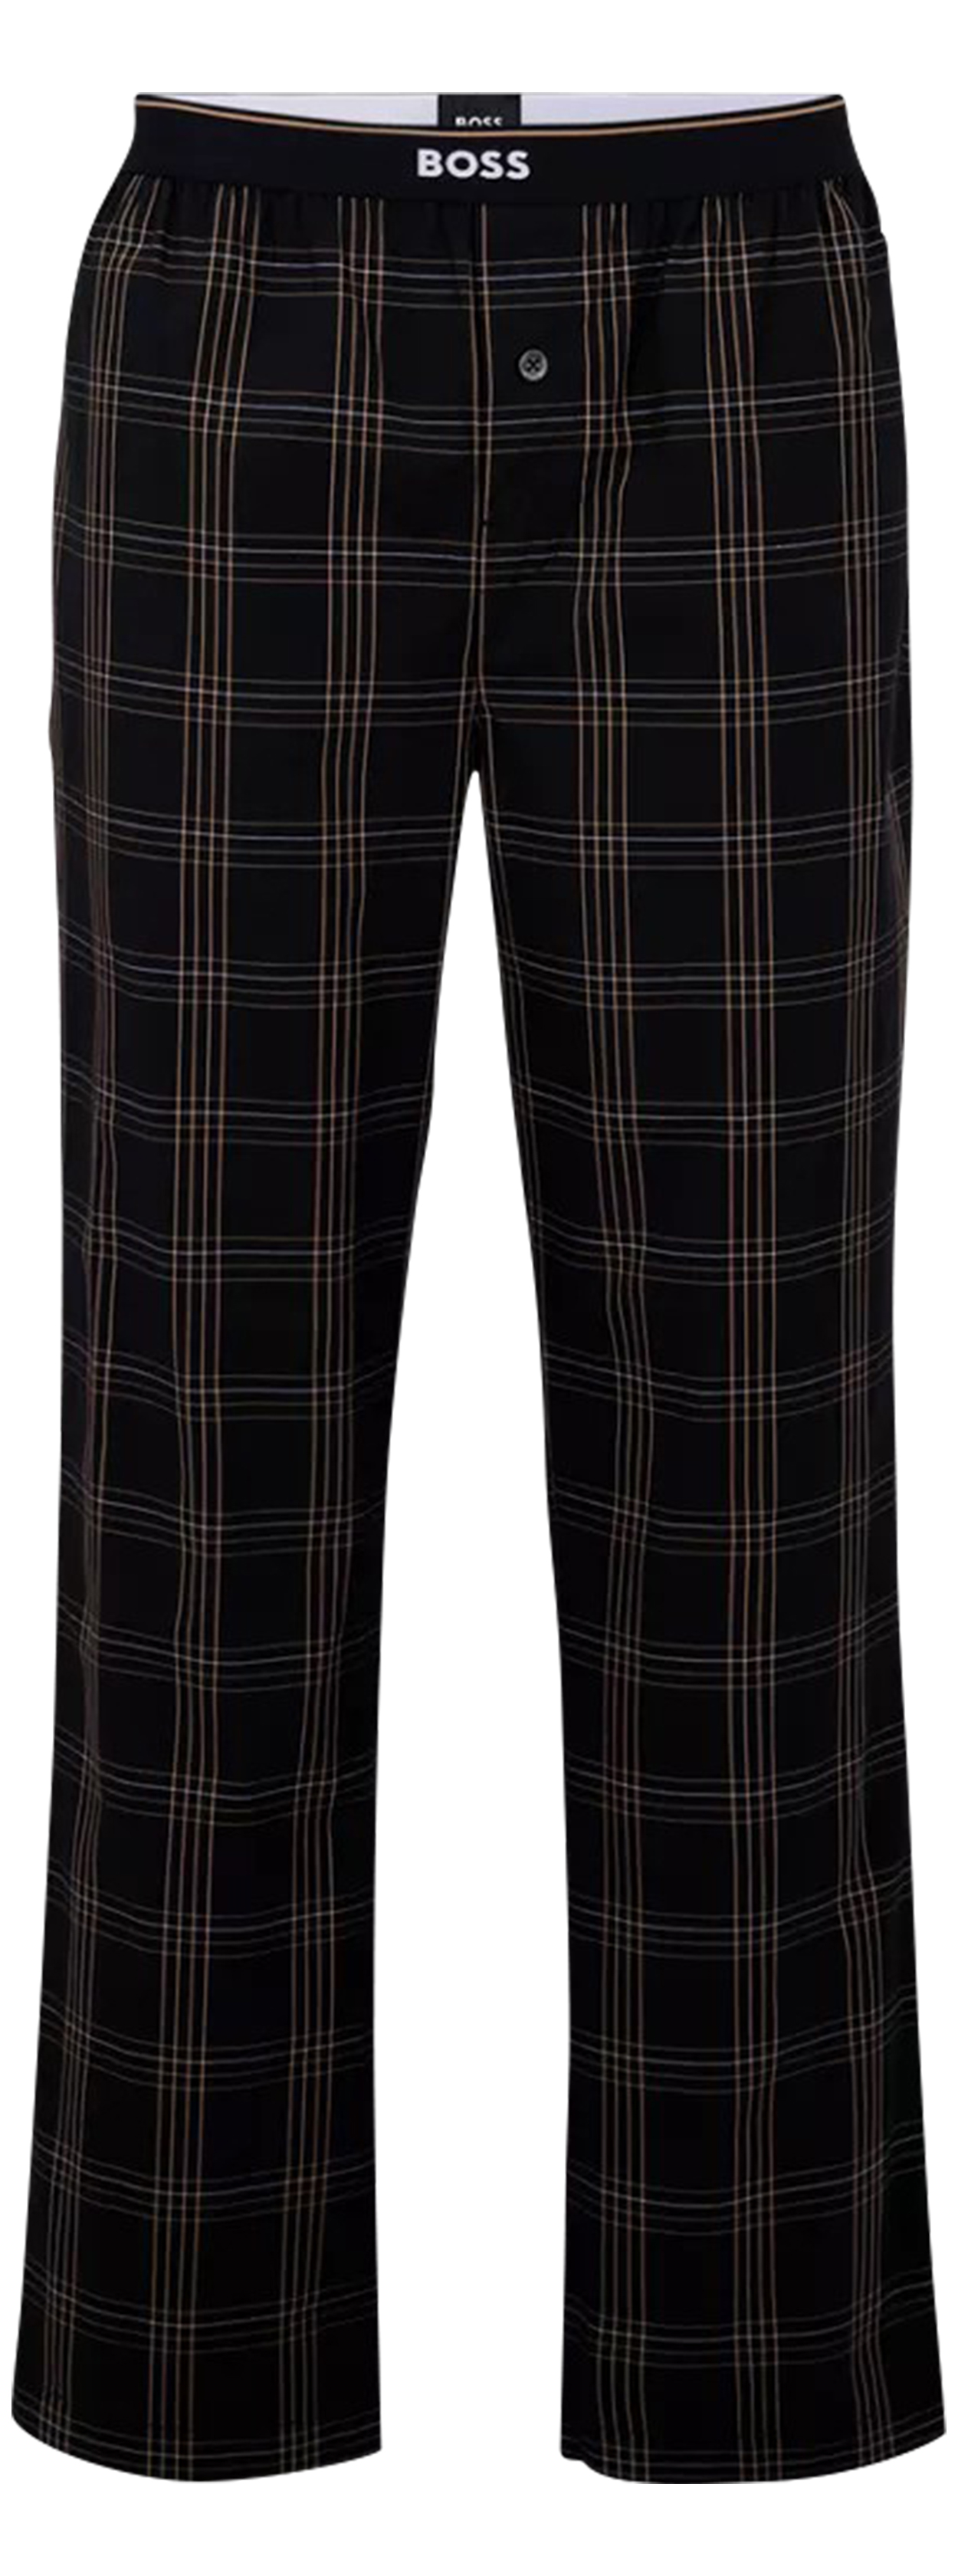 pantalon de pyjama boss coton slim noir tartan